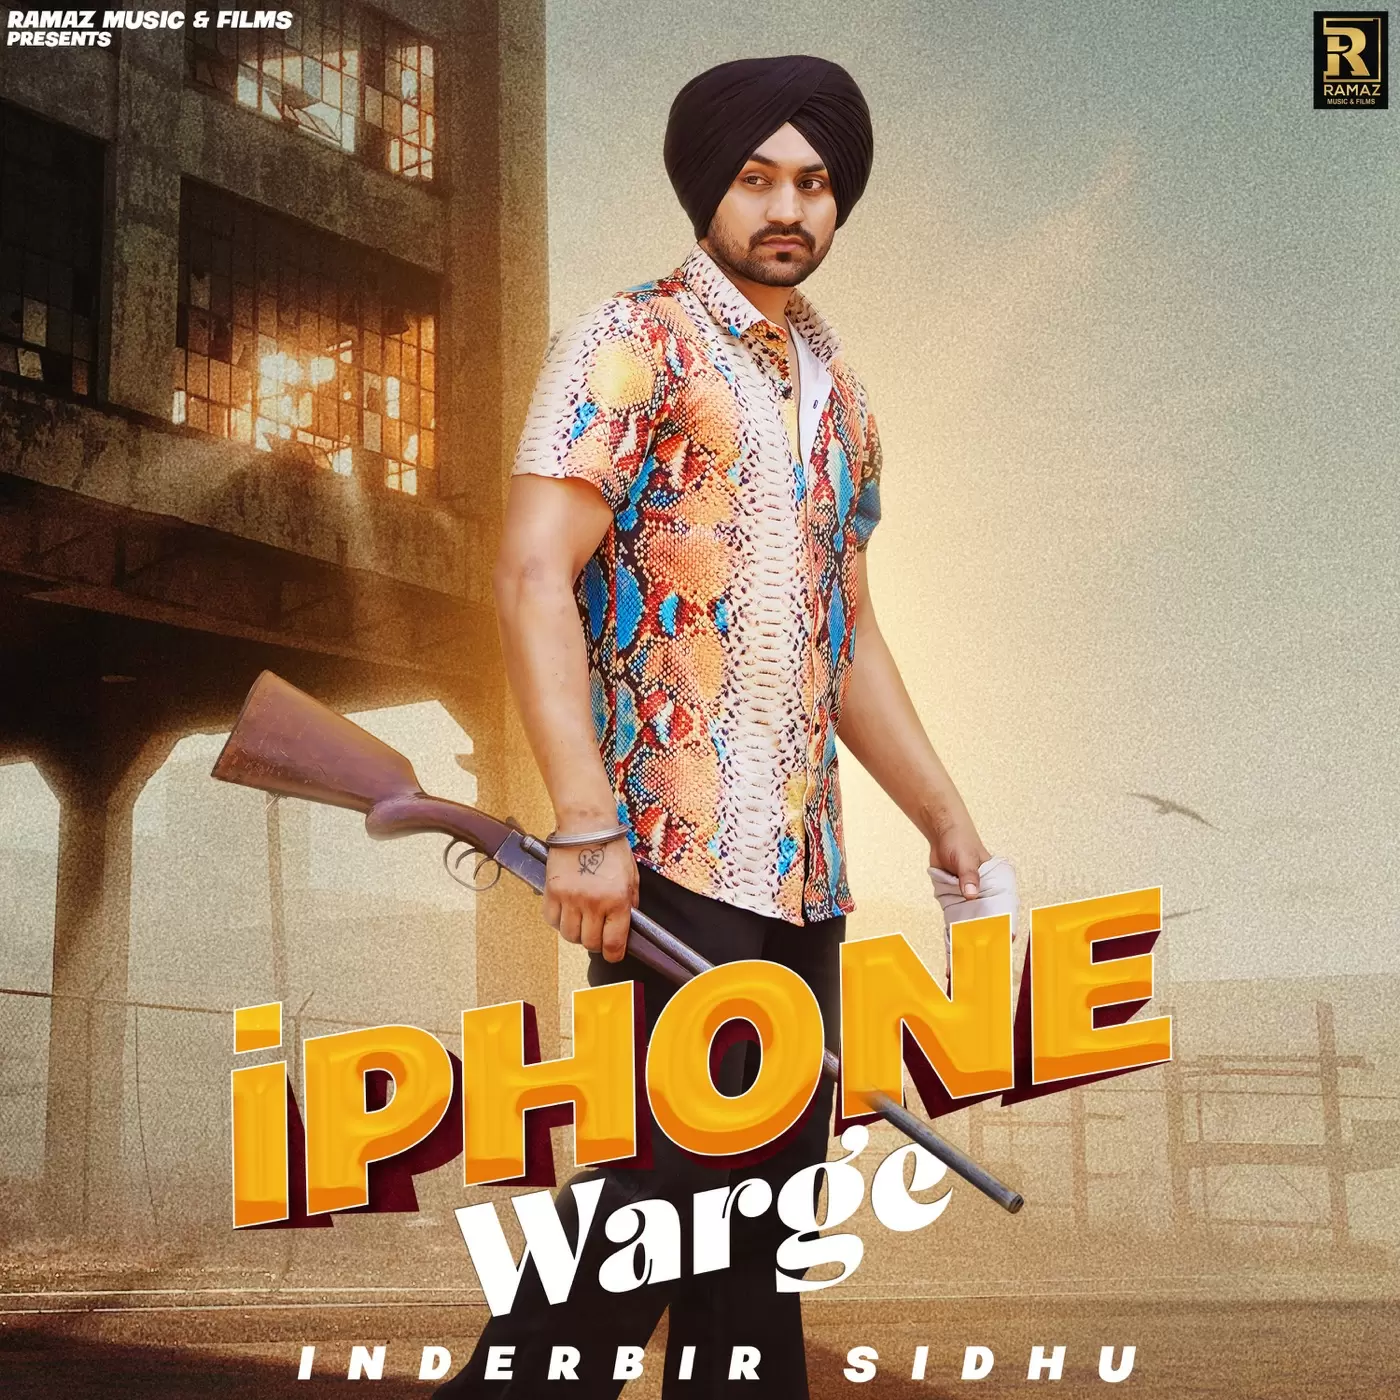 Iphone Warge Inderbir Sidhu Mp3 Download Song - Mr-Punjab